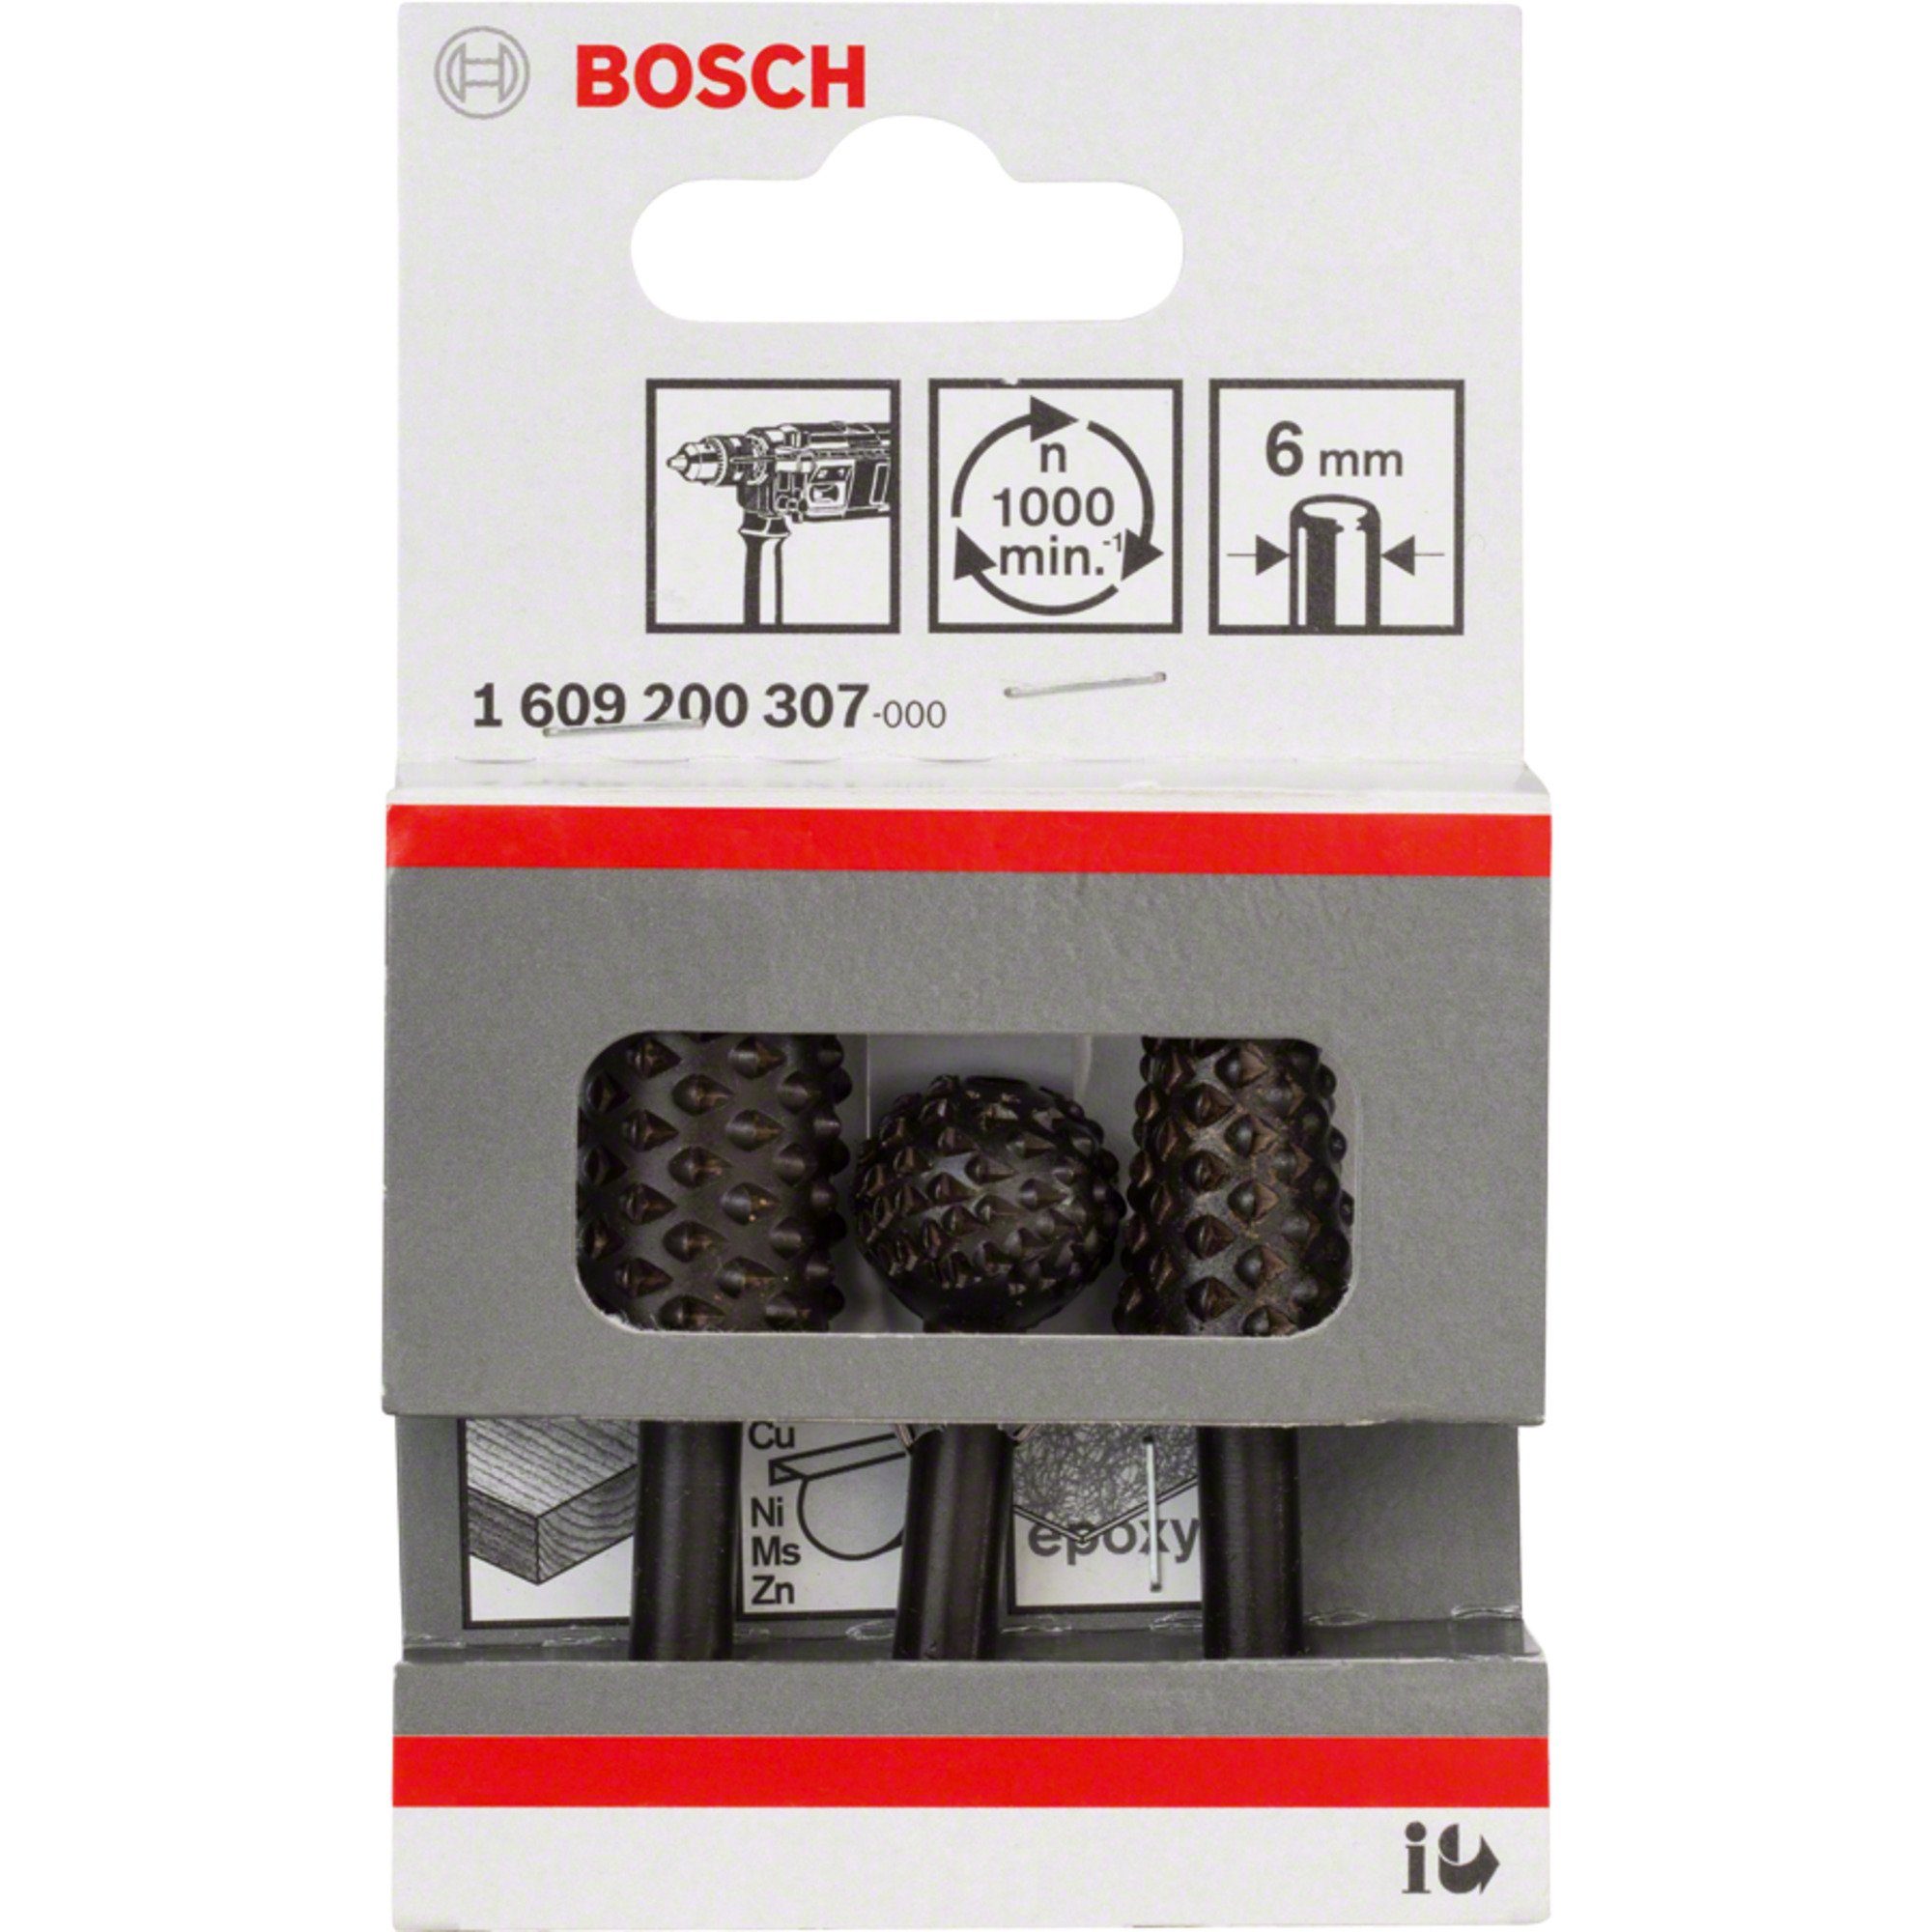 BOSCH Fräse Bosch Professional Freihandfräser-Set, 3-teilig